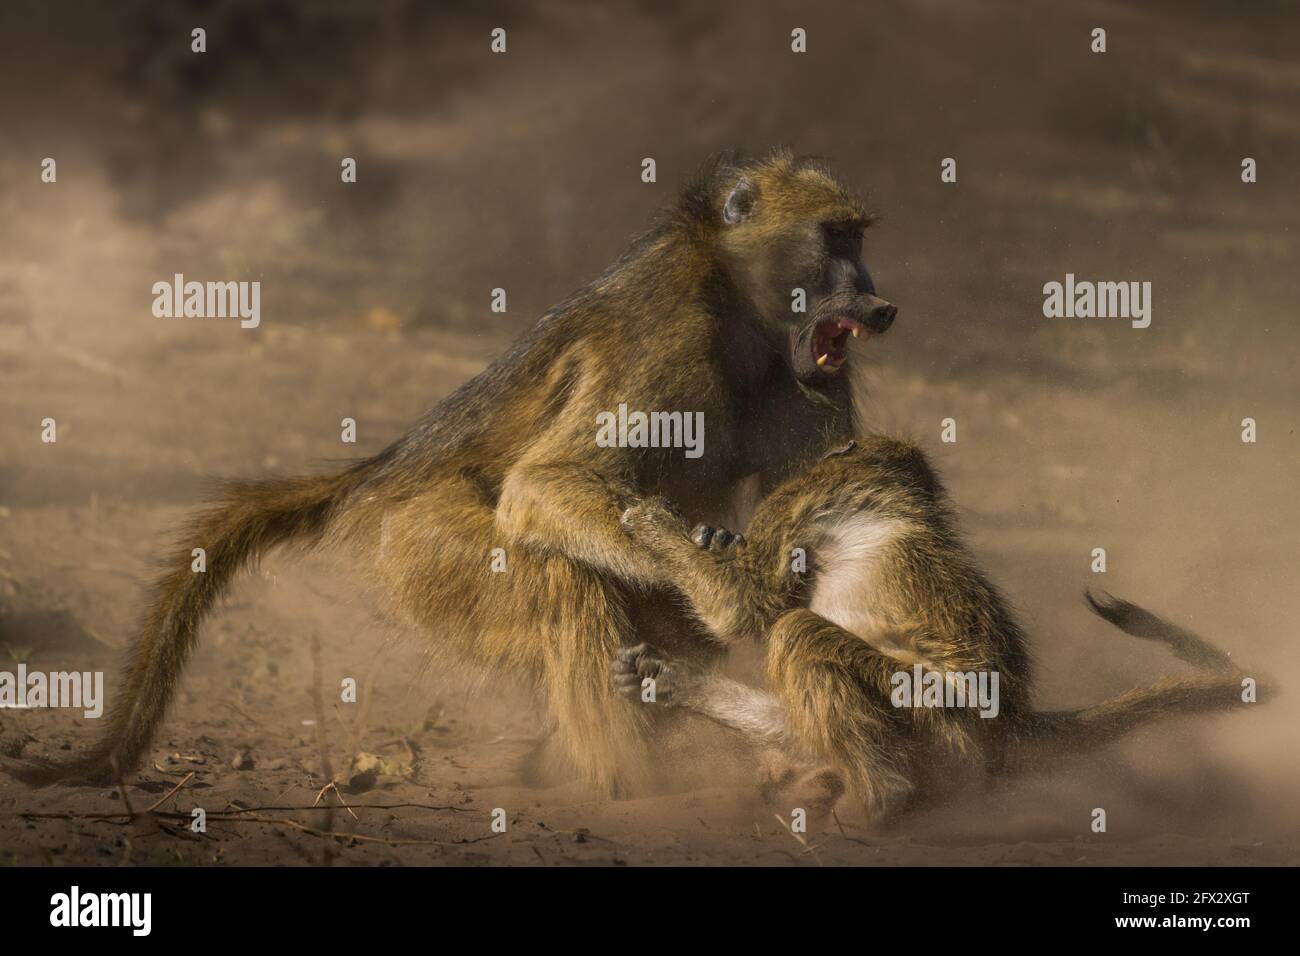 Der älteste Affe hält den Jungen nach unten und beginnt, seinen Kiefer zu öffnen. CHOBE NATIONAL PARK, BOTSWANA: SCHOCKIERENDE Bilder haben einen 22-Pou eingefangen Stockfoto